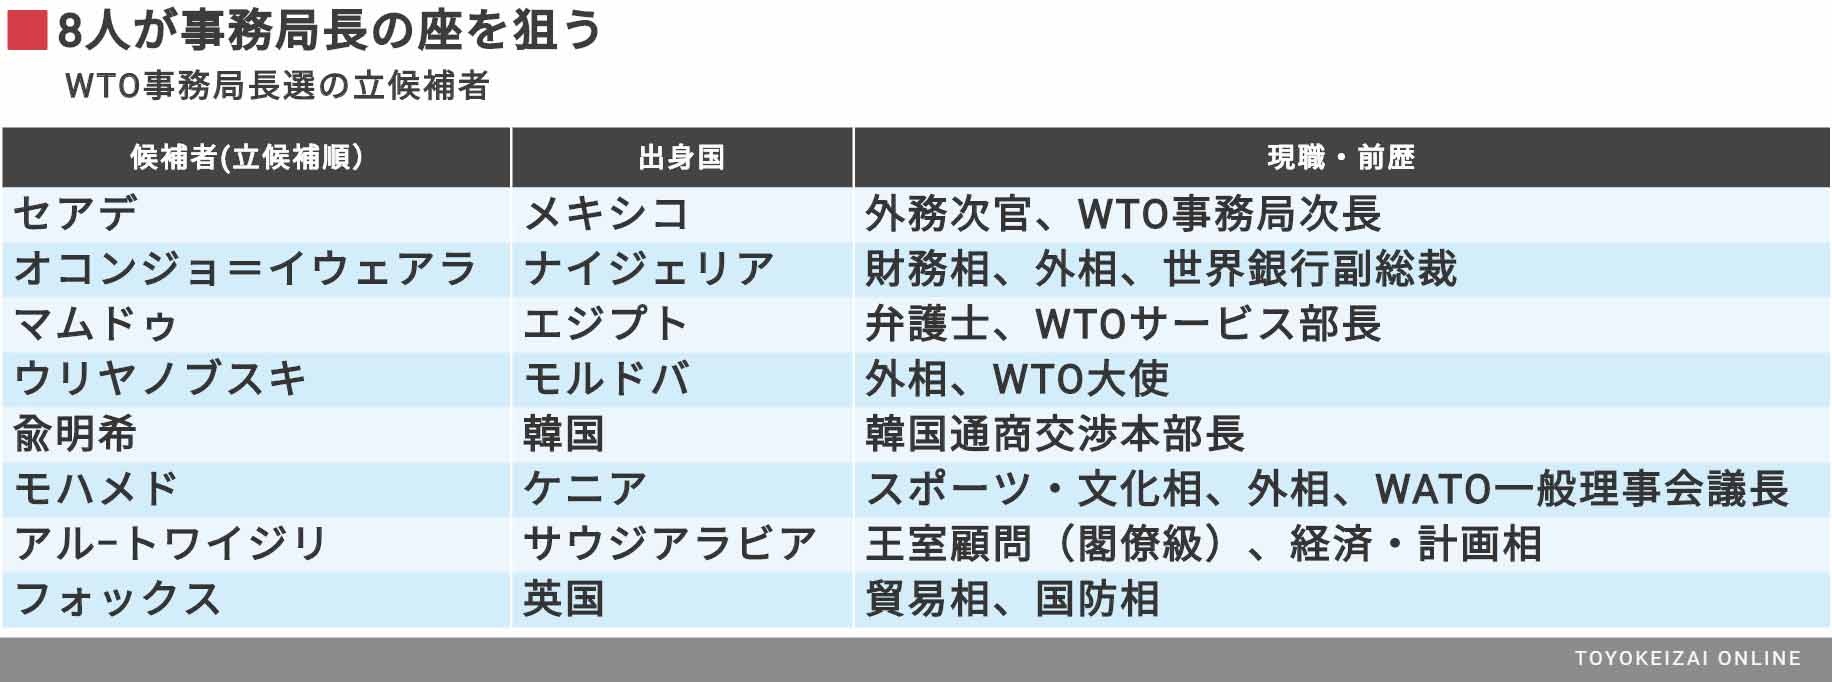 8人の大混戦となるWTO次期トップ選挙の行方 韓国も立候補するが日本は人材が乏しく傍観 | 政策 | 東洋経済オンライン